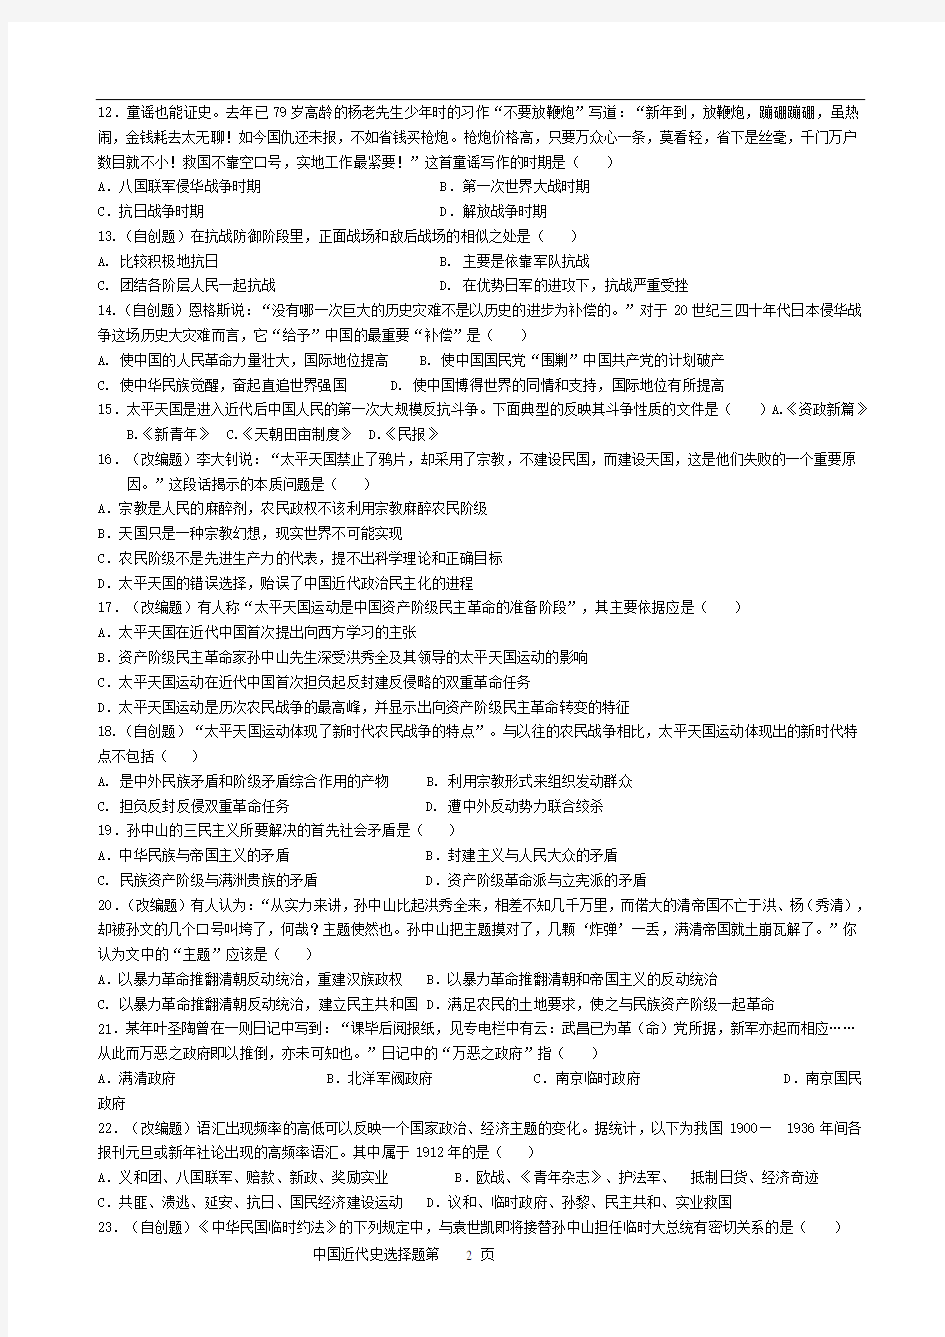 中国近代史选择题专项训练100题(详细版有答案)